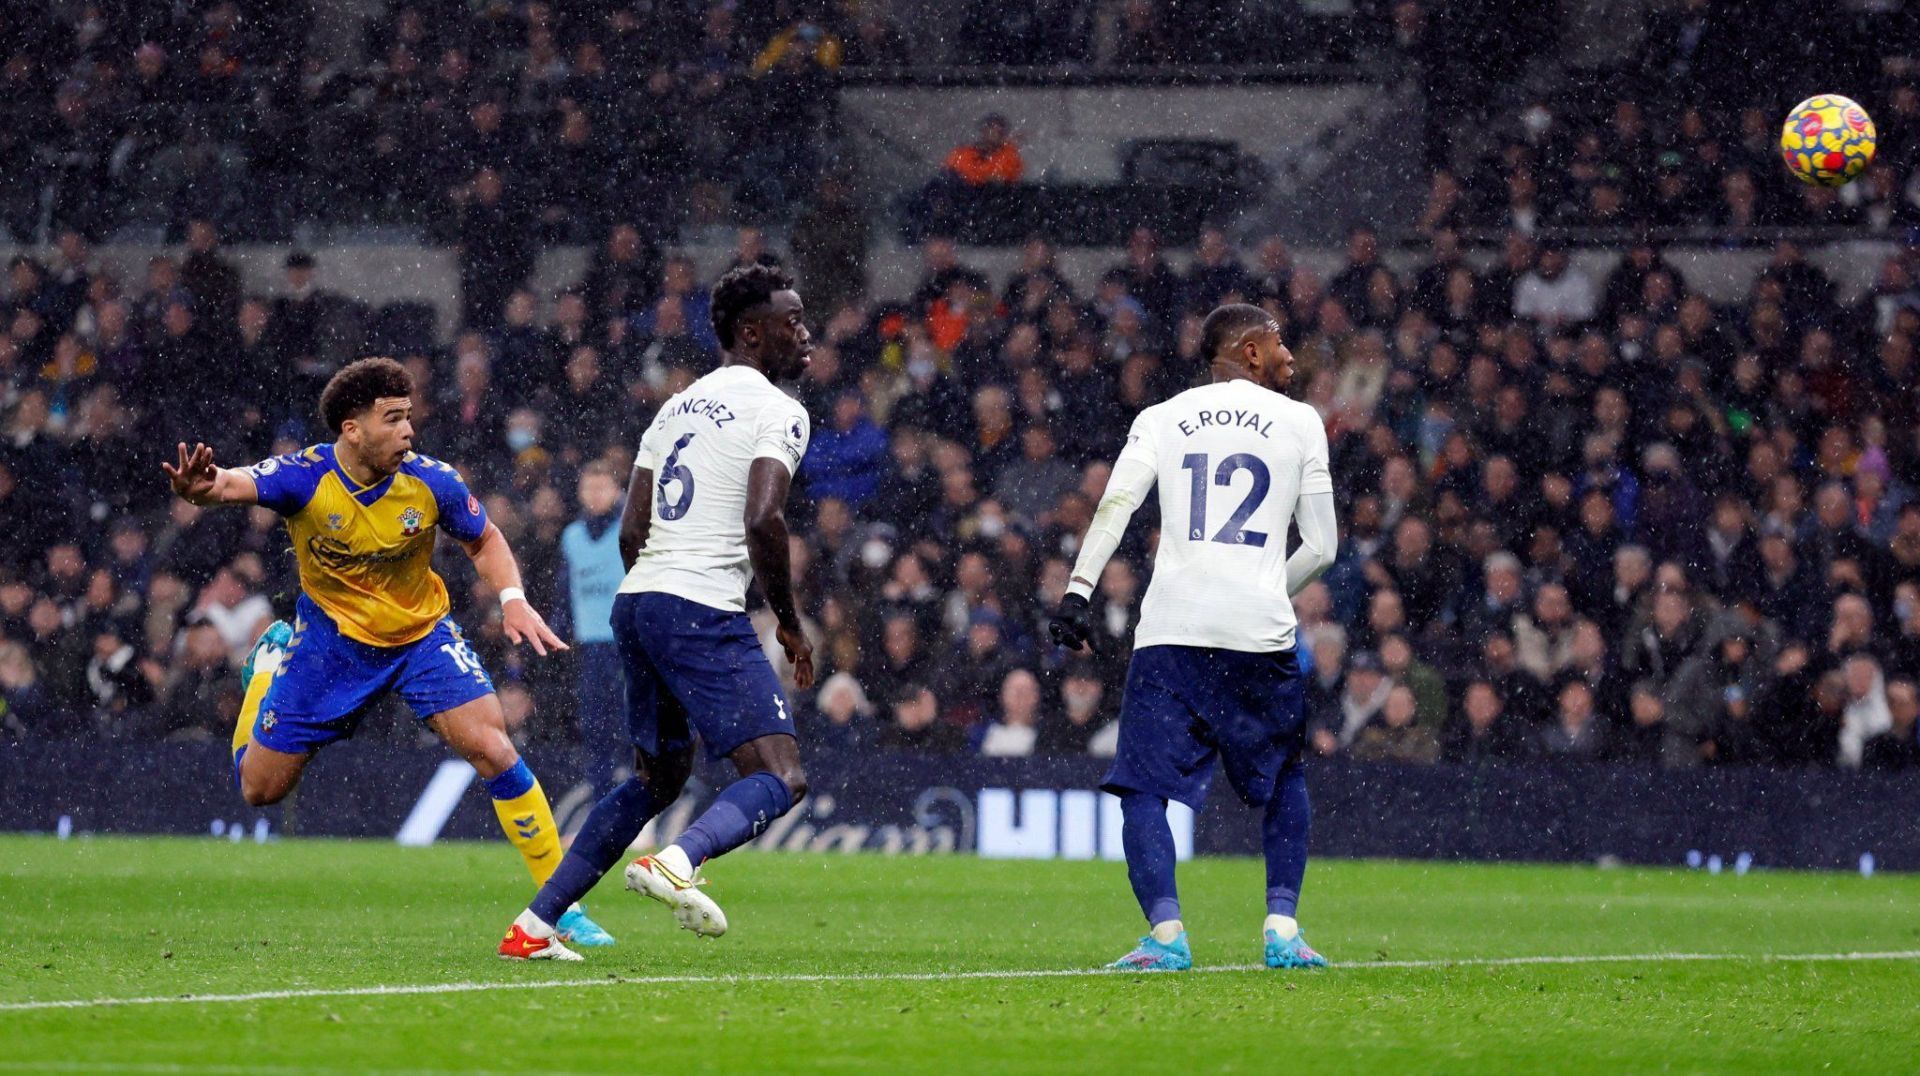 Tottenham were beaten 3-2 by Southampton in the Premier League